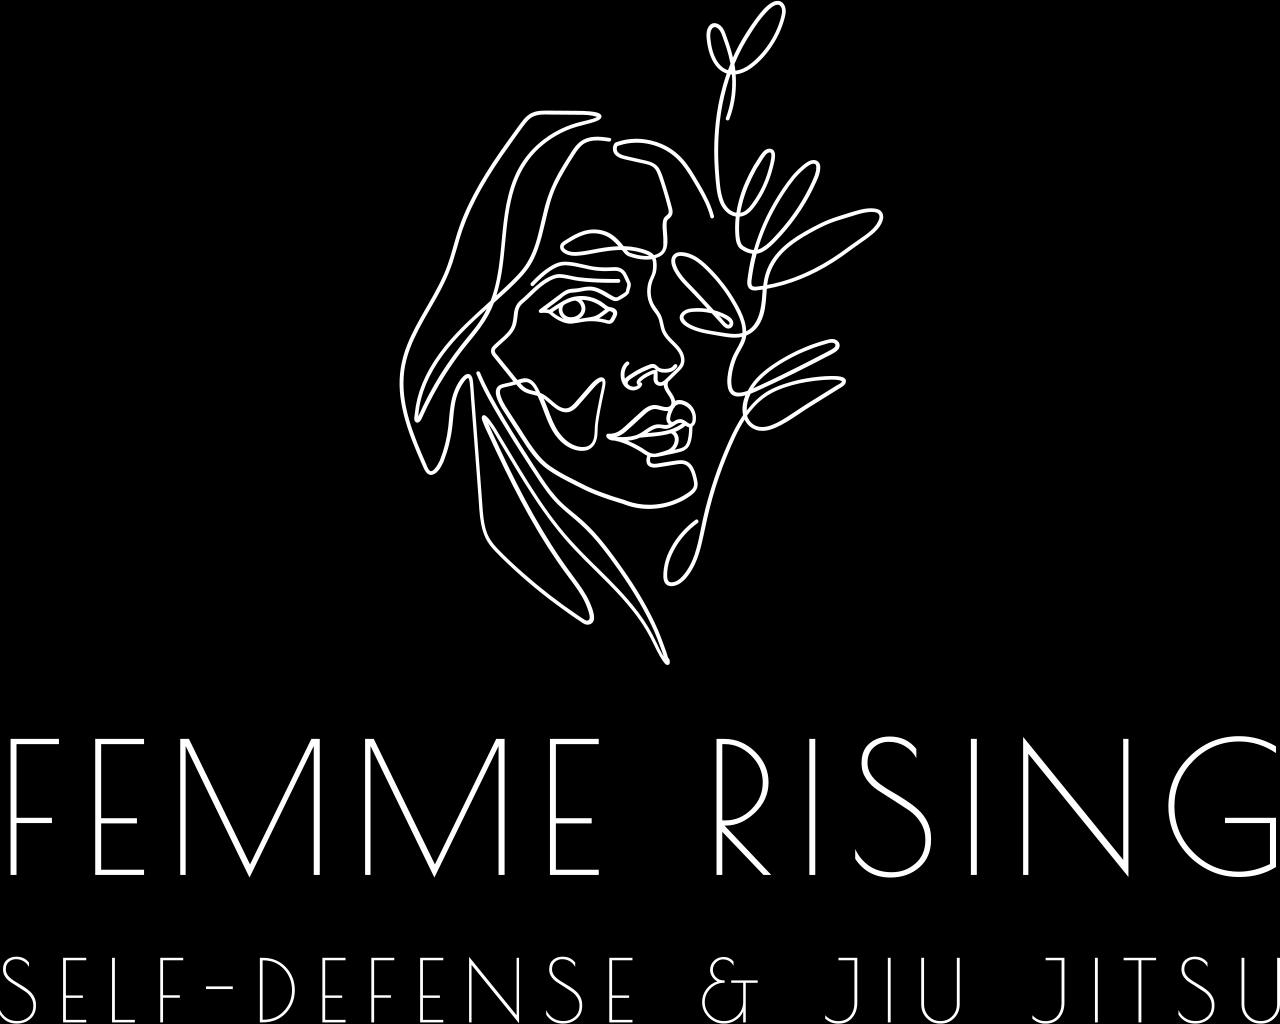 Femme Rising's logo